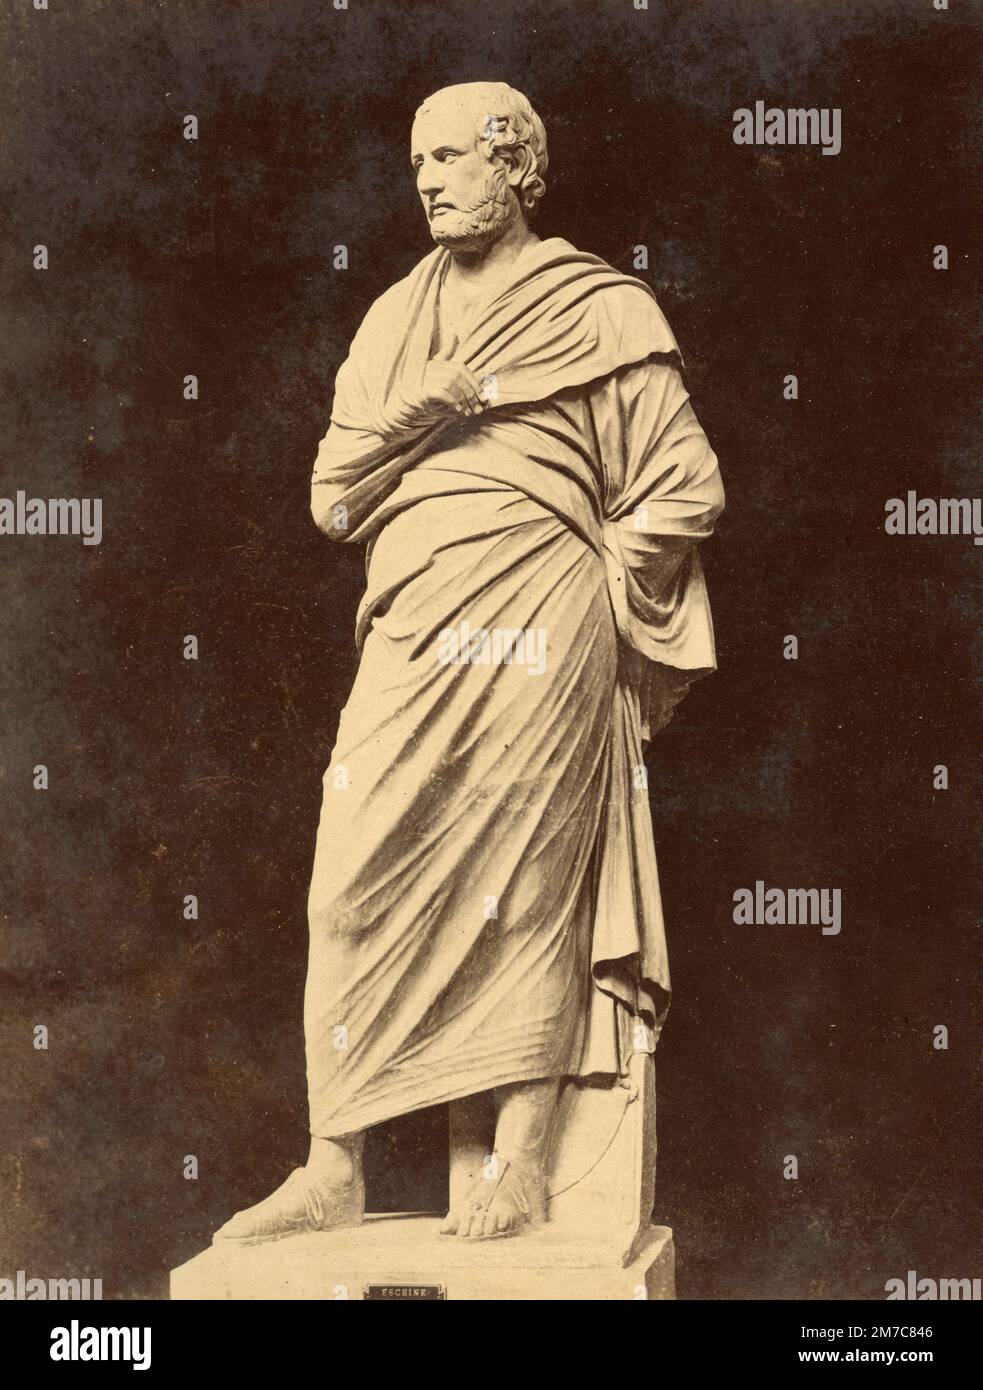 Eschines, statista ateniese, scultura romanica in marmo rinvenuta a Ercolano, stampa albumena, 1870s Foto Stock